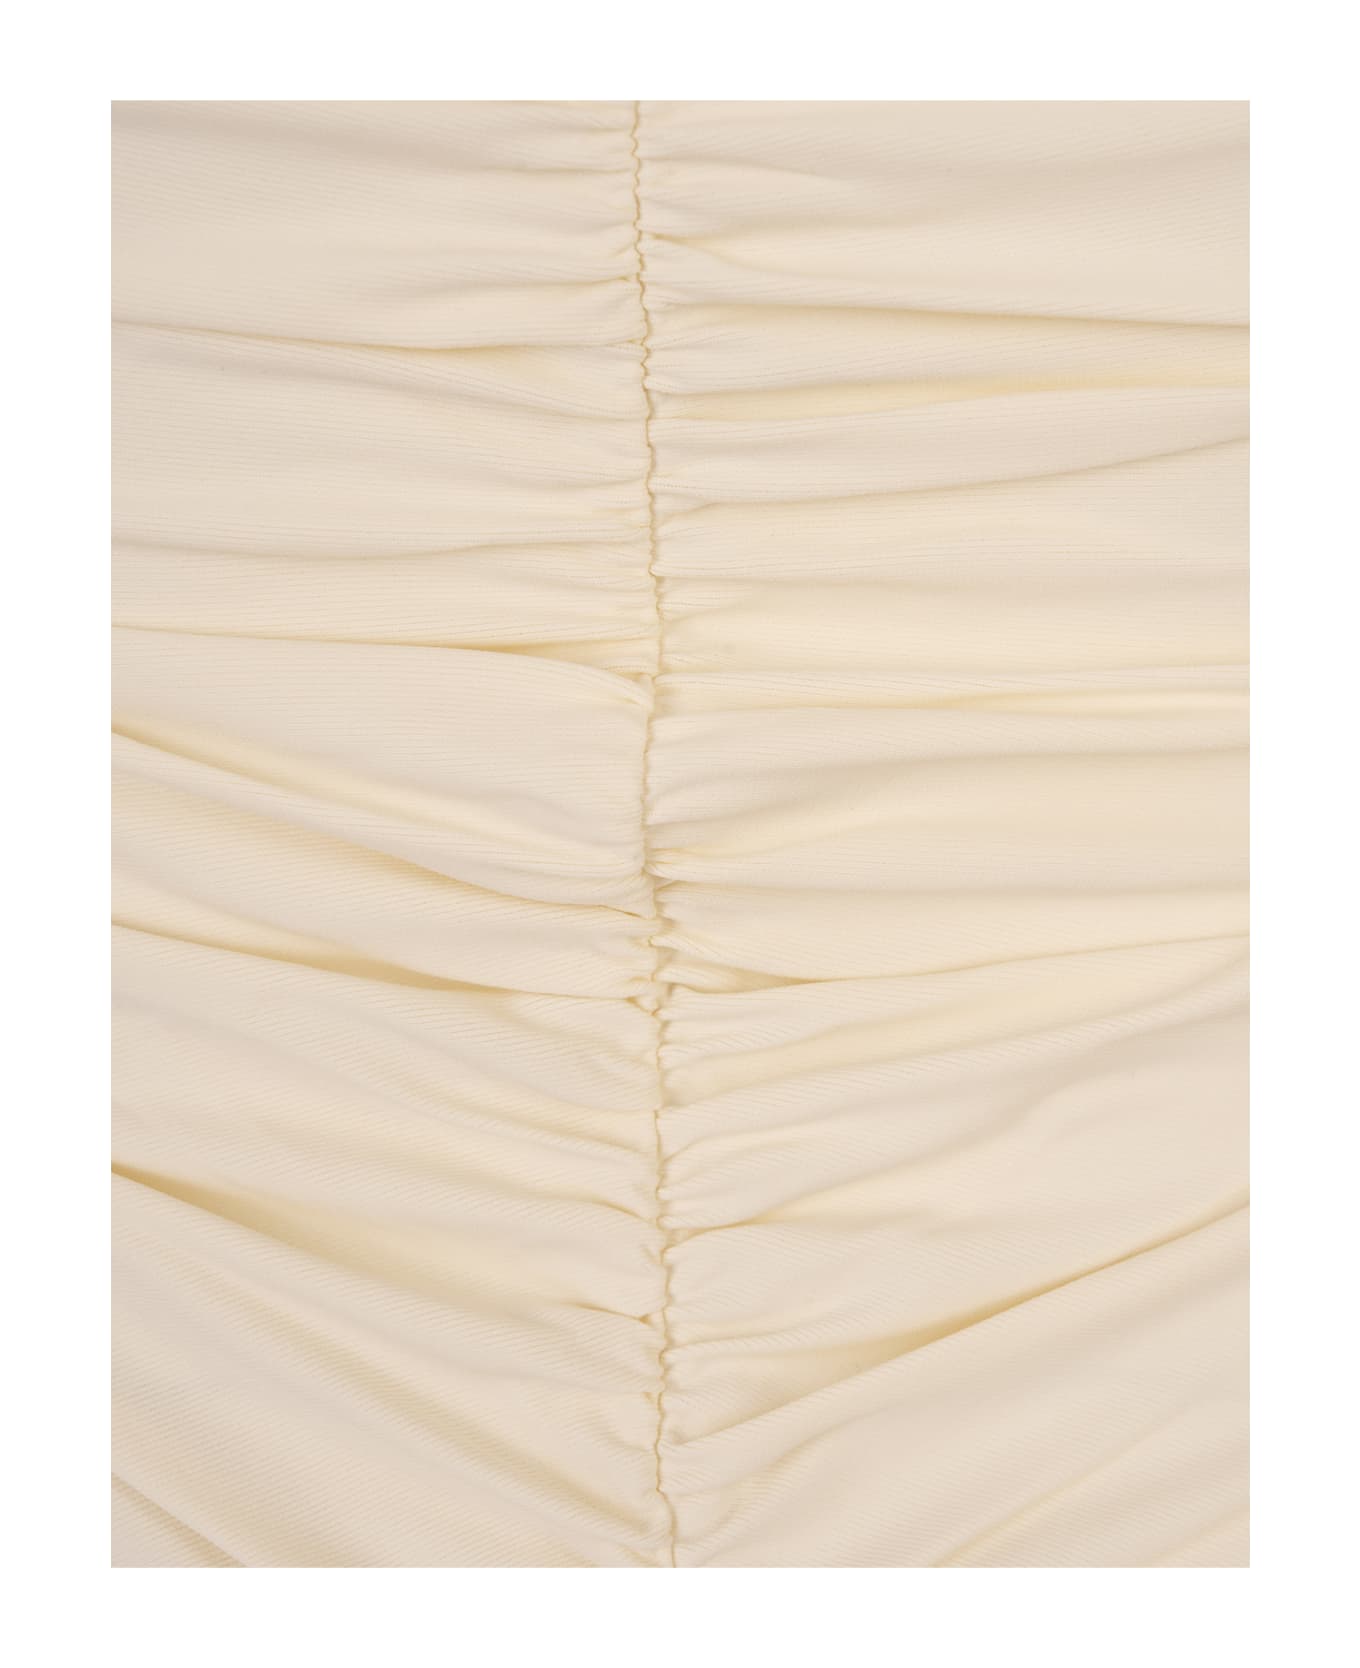 La Reveche Ivory Lillibet Mini Dress - White